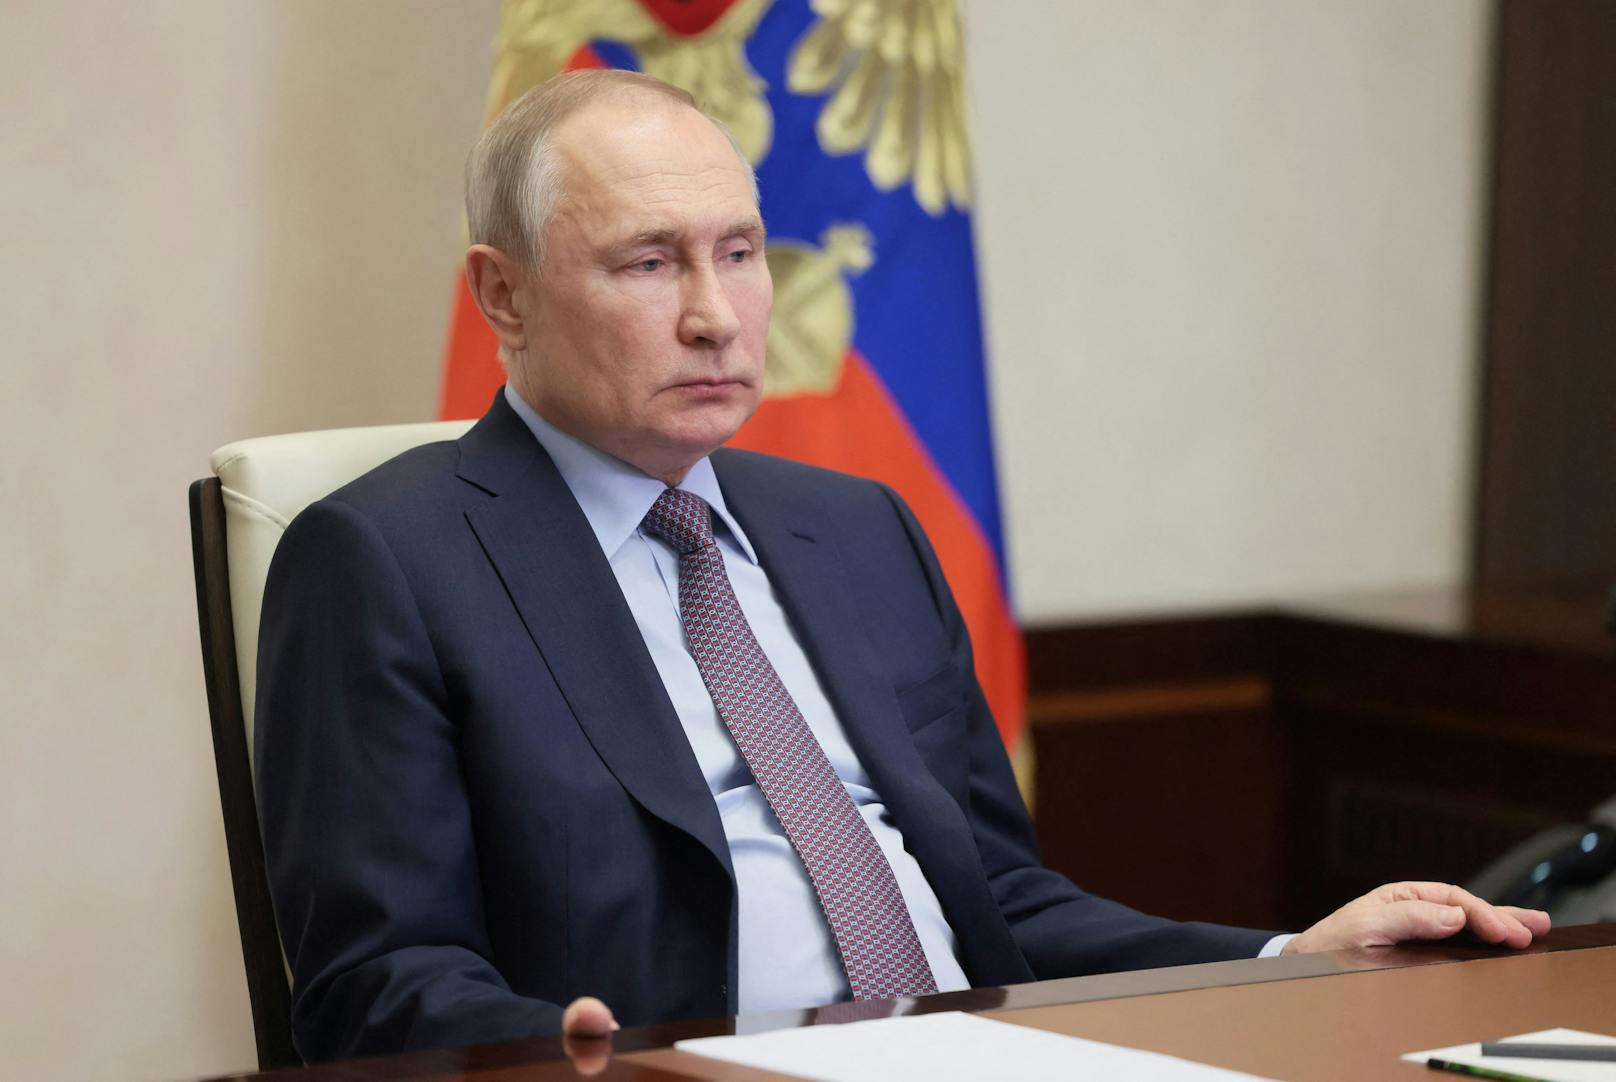 Der russische Präsident Wladimir Putin soll am Sonntag einem ukrainischen Attentatsversuch entgangen sein.